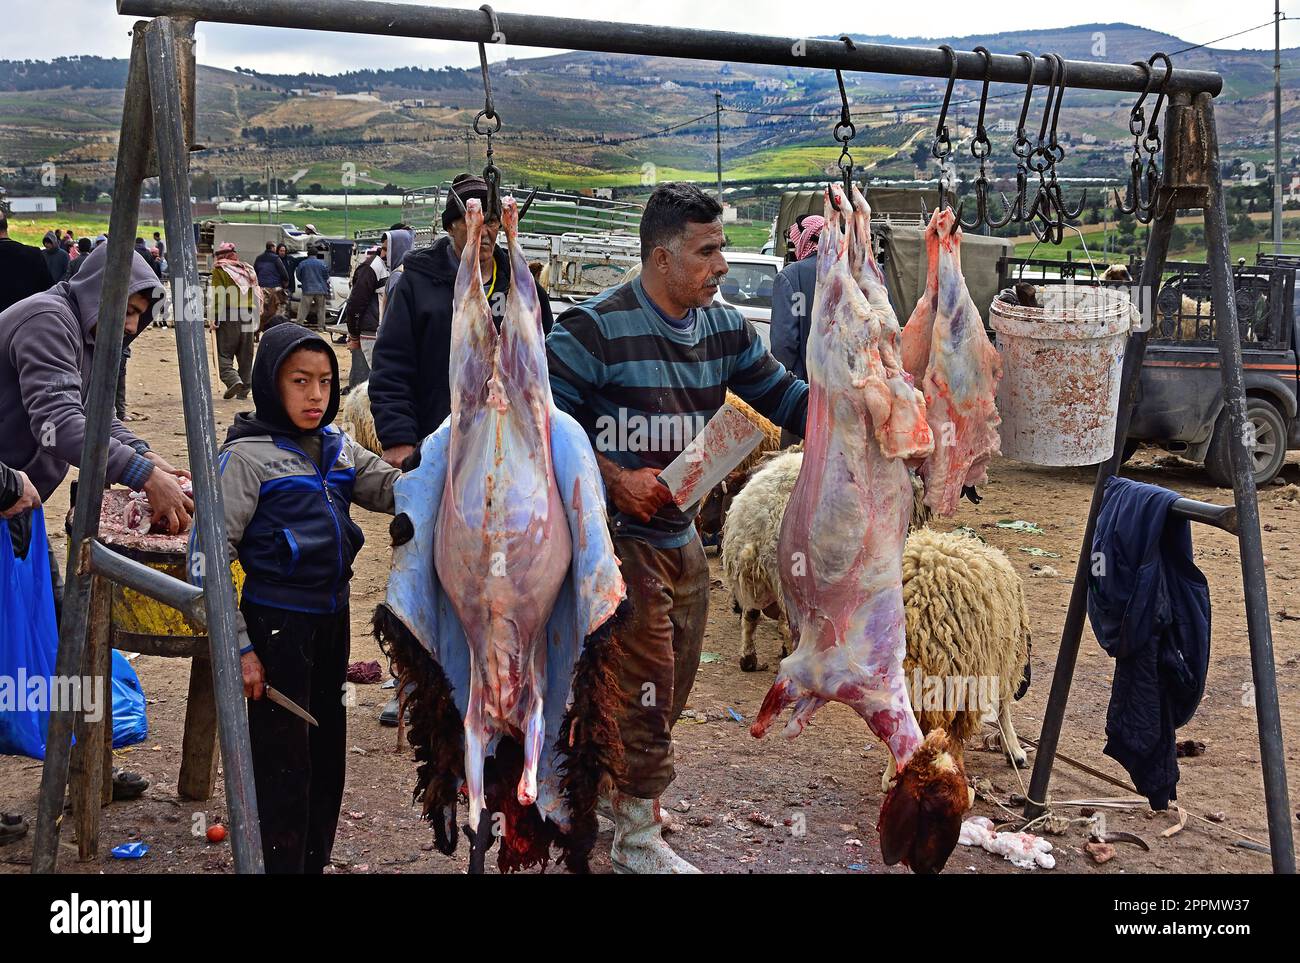 Macellaio Padre e Figlio. Shaykh 'Abd al-'Azeez ibn Baaz (che Allah abbia misericordia di lui) Halal.Sheep e Goat mercato, tra, Amman e Jerash, Giordania. Foto Stock